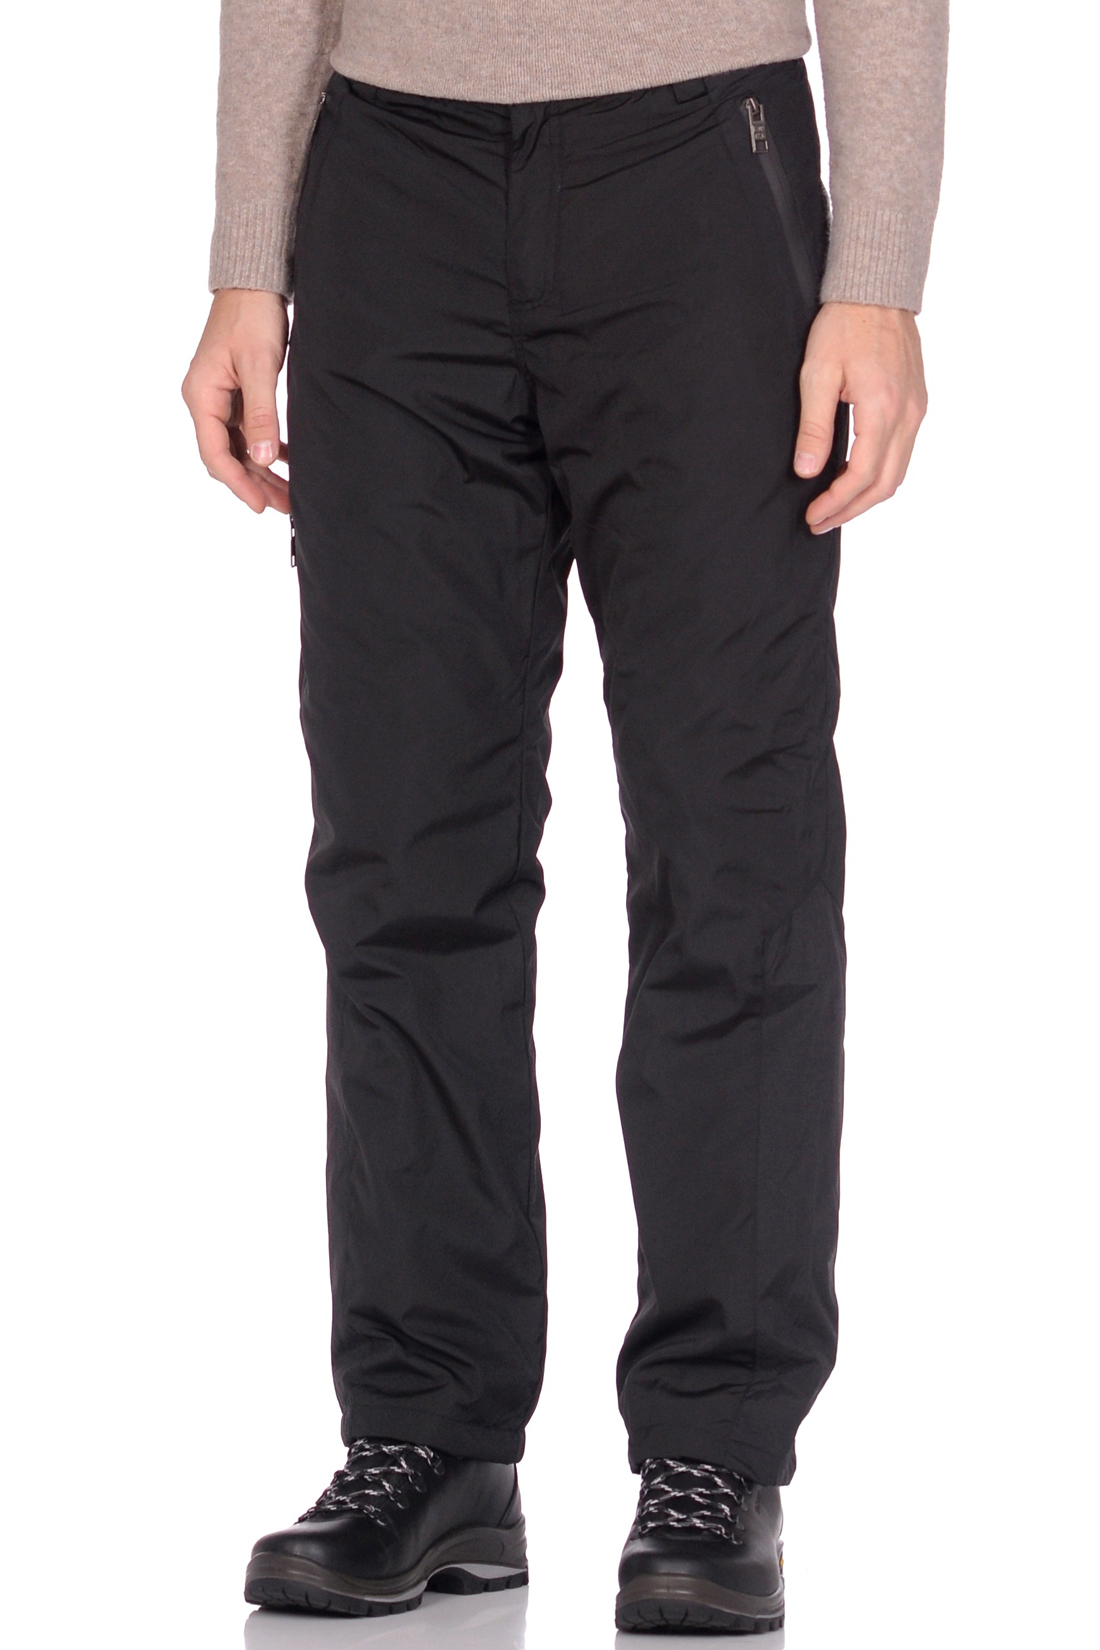 Утеплённые брюки с флисом (арт. baon B799525), размер L, цвет черный